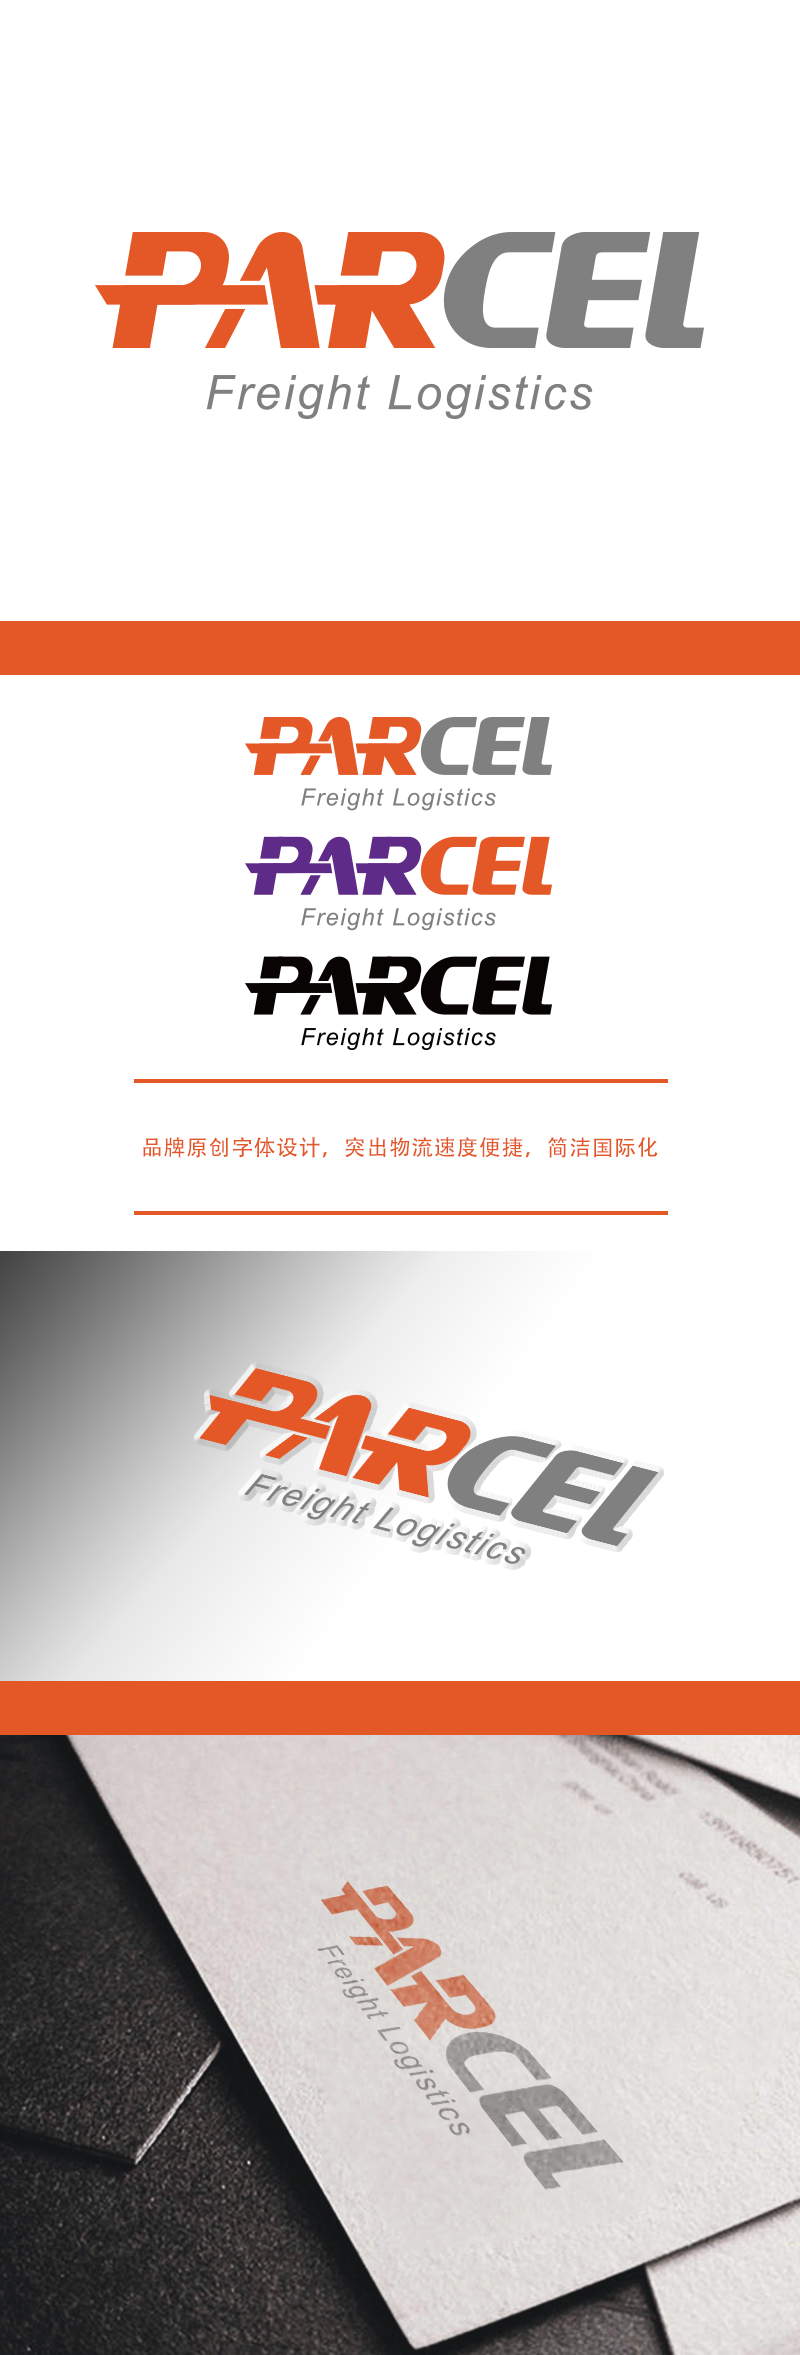 黄安悦的Parcel Freight Logisticslogo设计